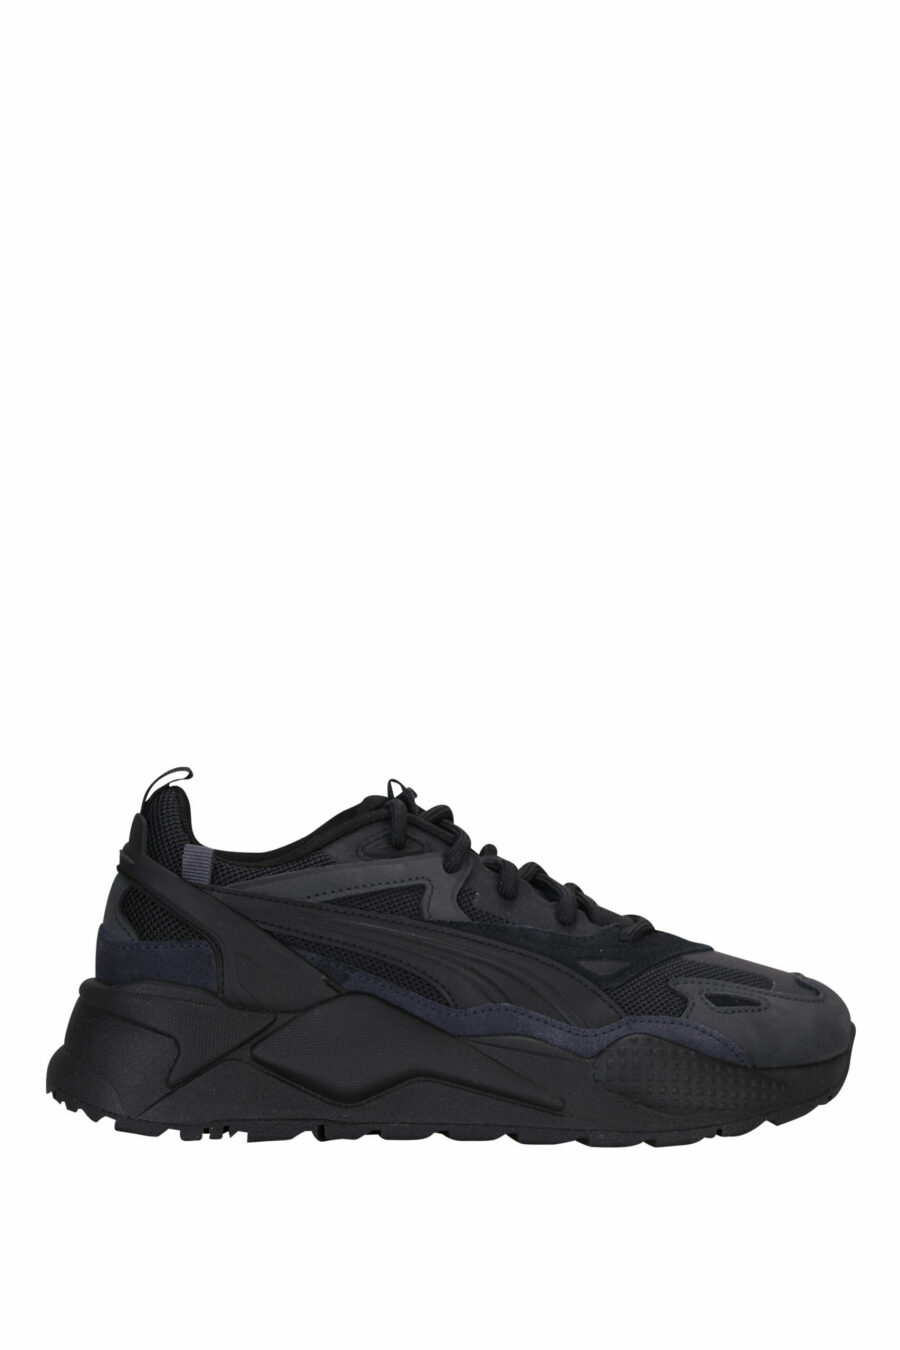 Gemischte schwarze Schuhe " RS-X " mit Mini-Logo - 4065452600723 skaliert